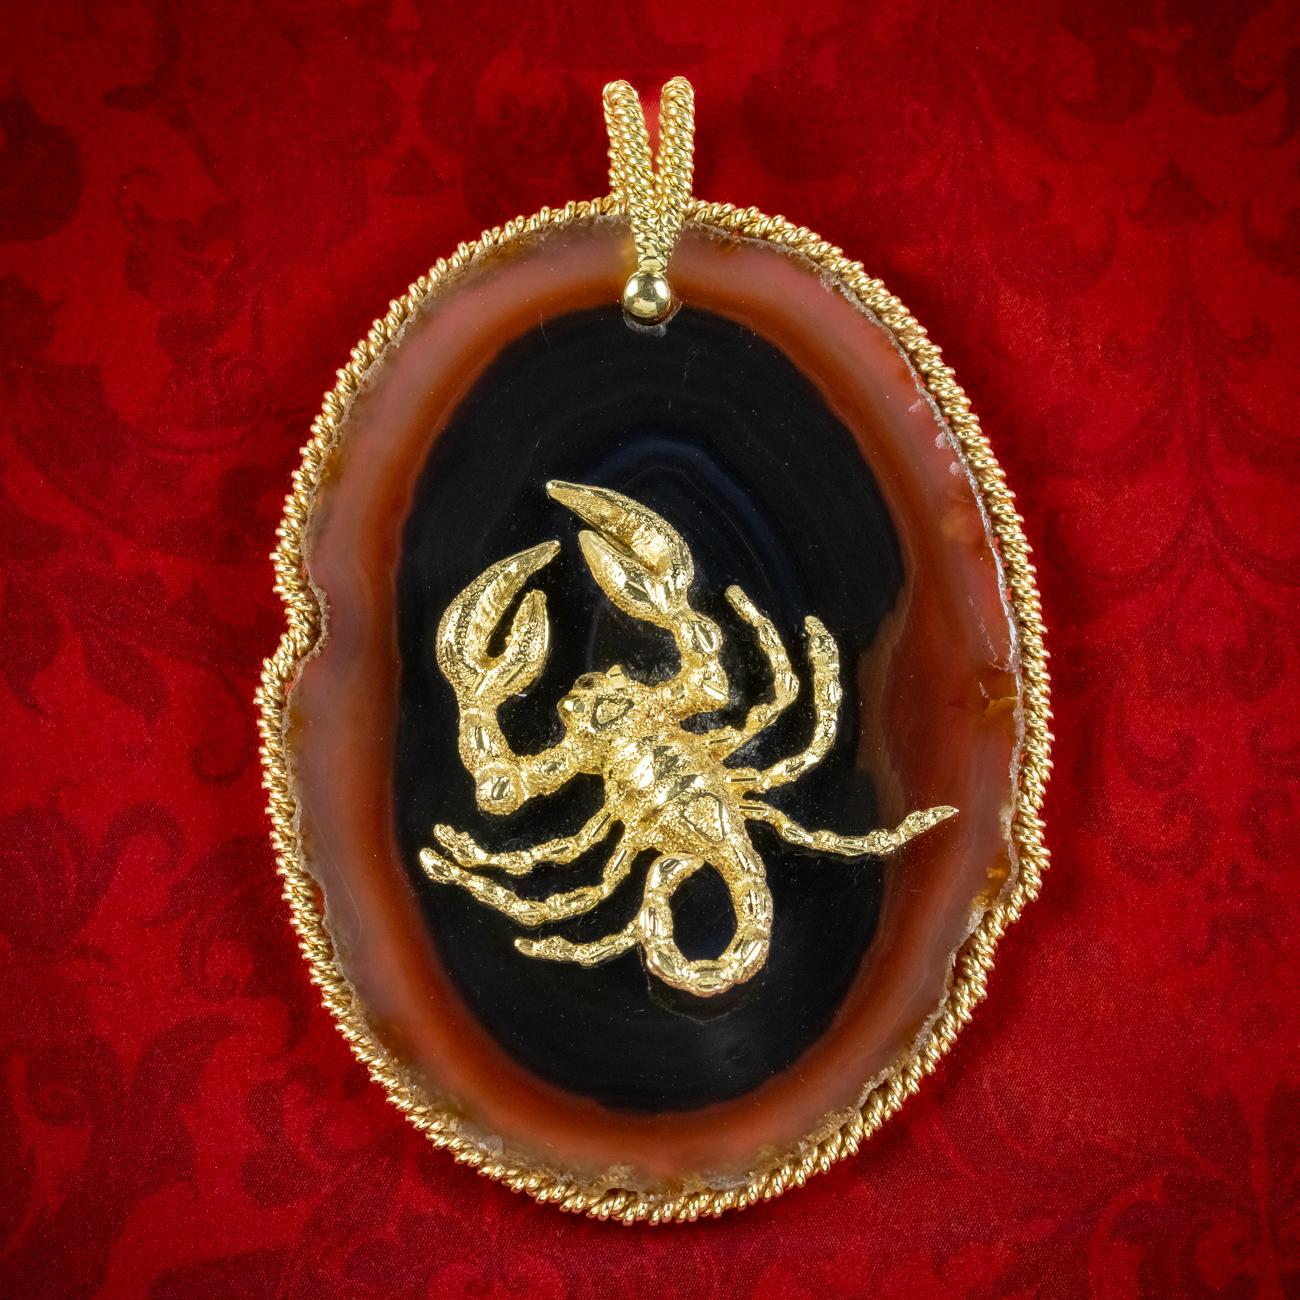 Un remarquable pendentif vintage du Zodiac Scorpion construit autour d'une énorme agate taillée à plat avec un scorpion en or 18ct sur le dessus. Il a été finement détaillé et contraste magnifiquement avec le noyau noir de l'agate, avec de belles